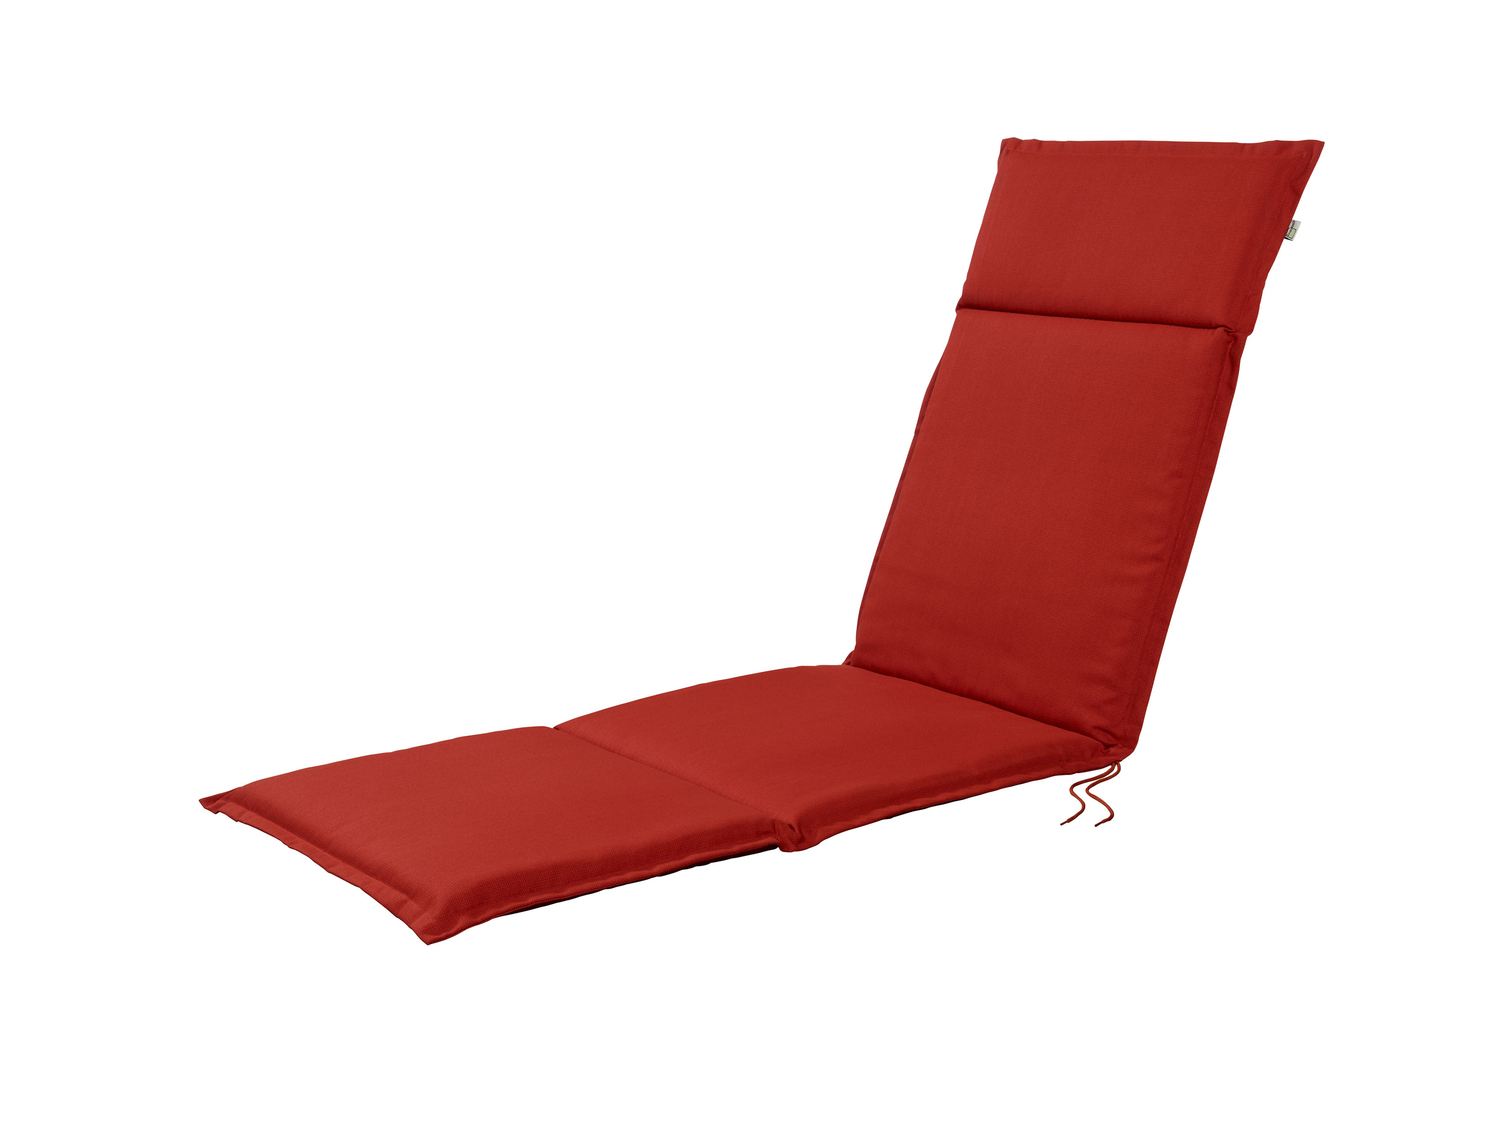 Cuscino per sedia sdraio Livarno, prezzo 19.99 &#8364; 
167x50 cm
Caratteristiche

- ...